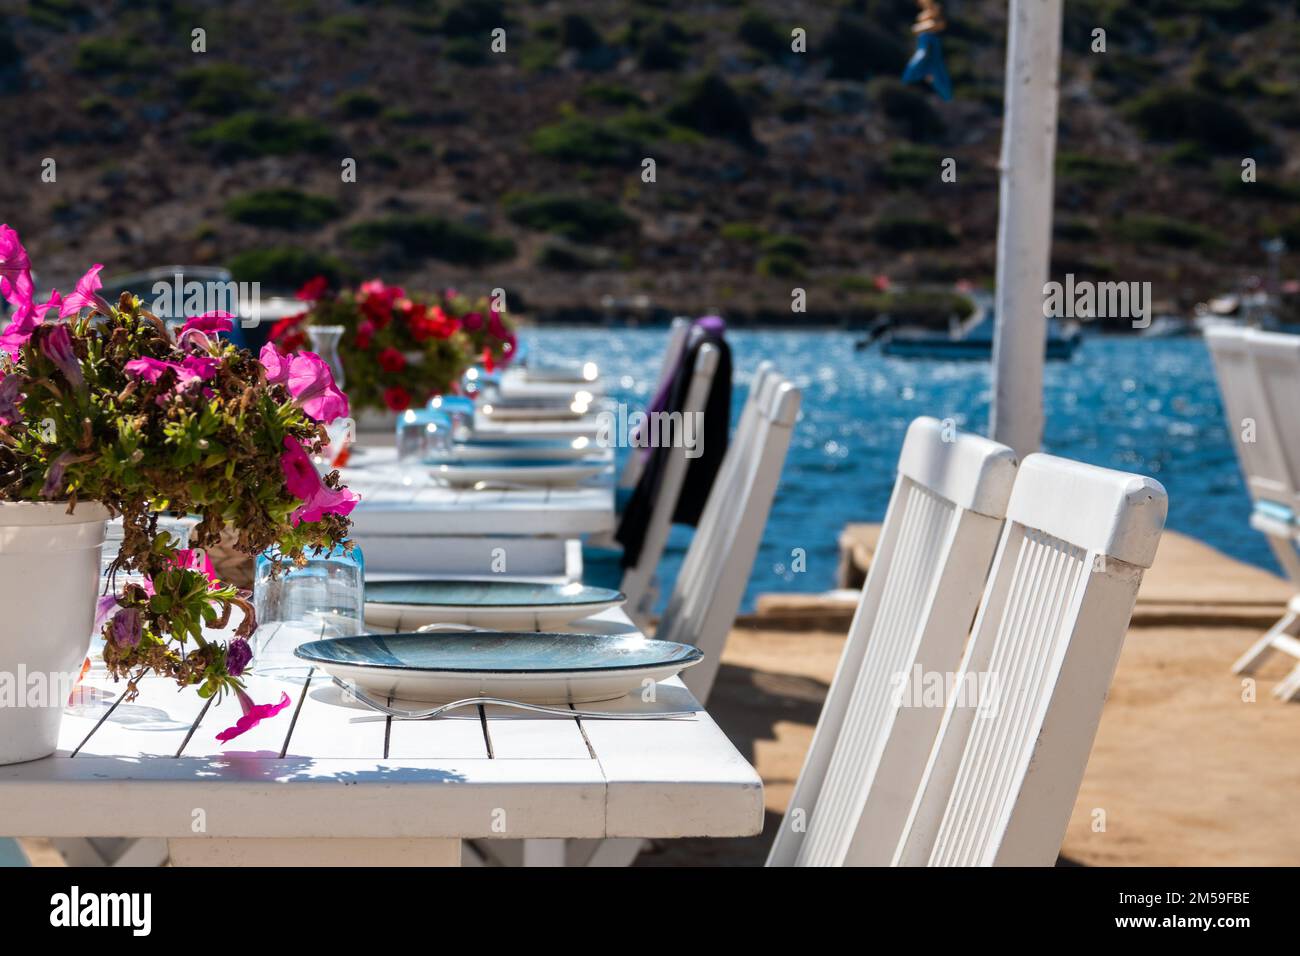 Esstisch für besondere Veranstaltungen, am Meer gelegen, mit Blumen dekoriert Stockfoto